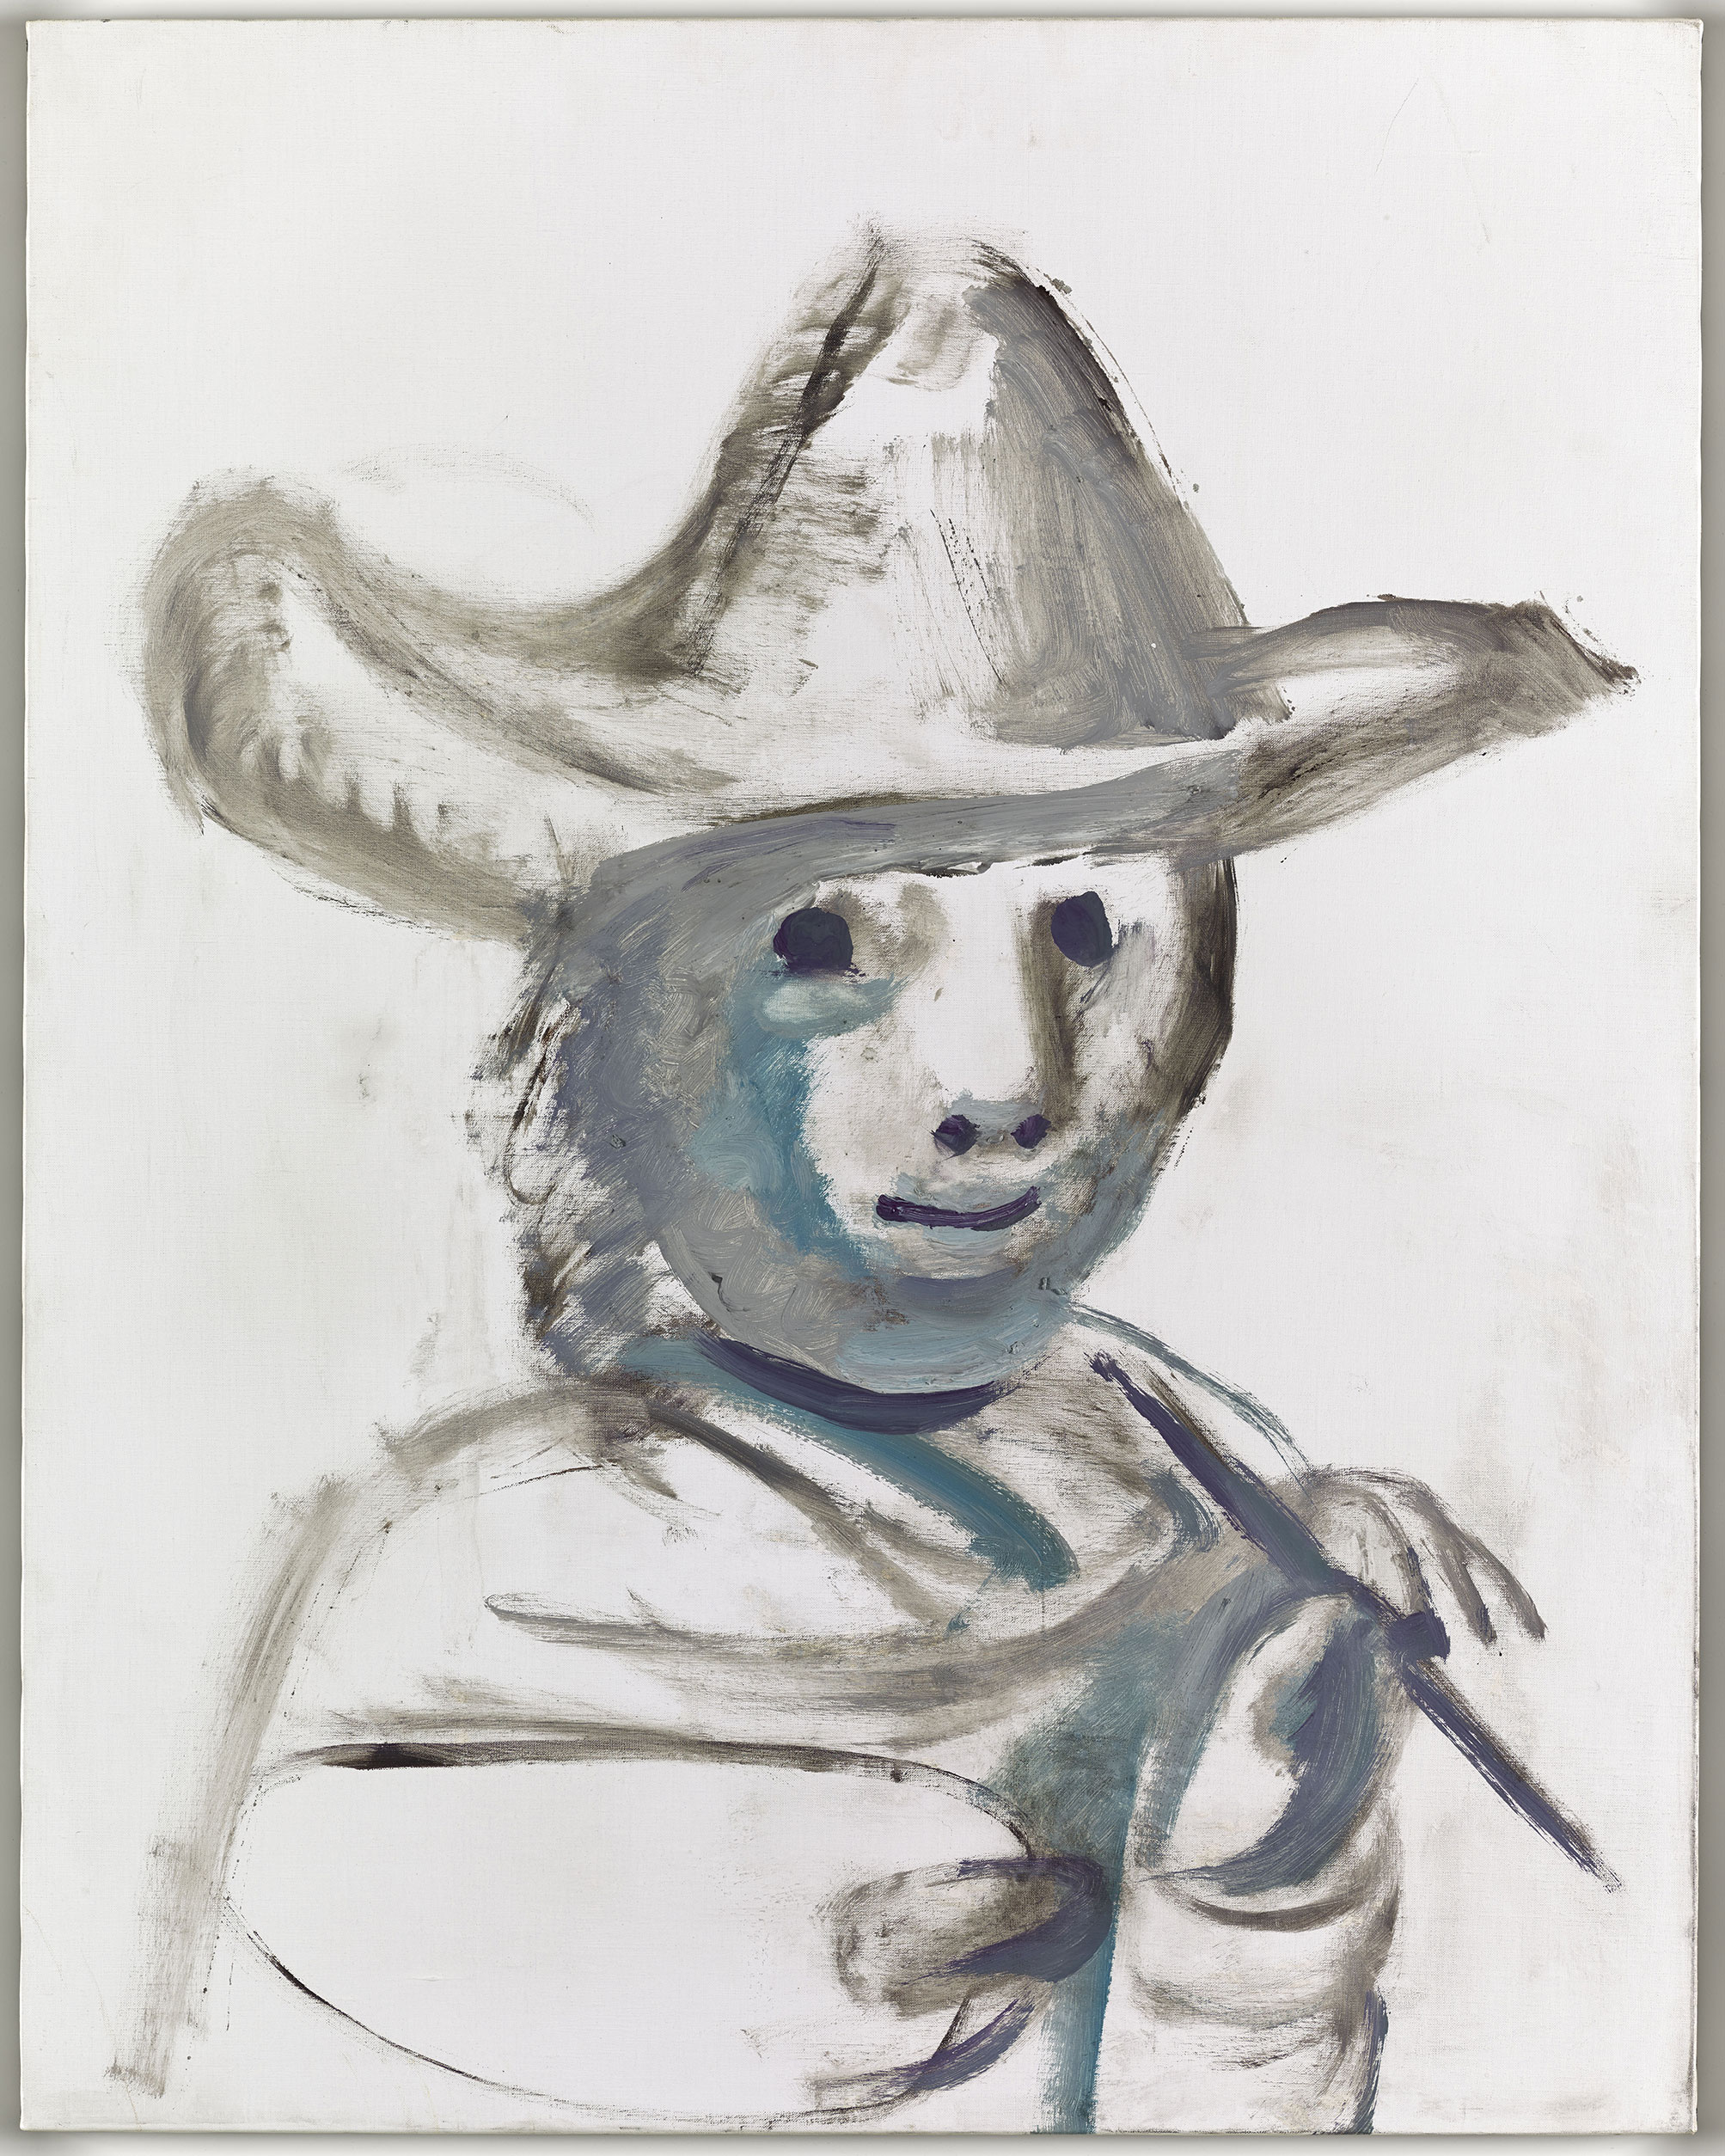 Picasso - Le Jeune peintre - MP228 - 15-651738 